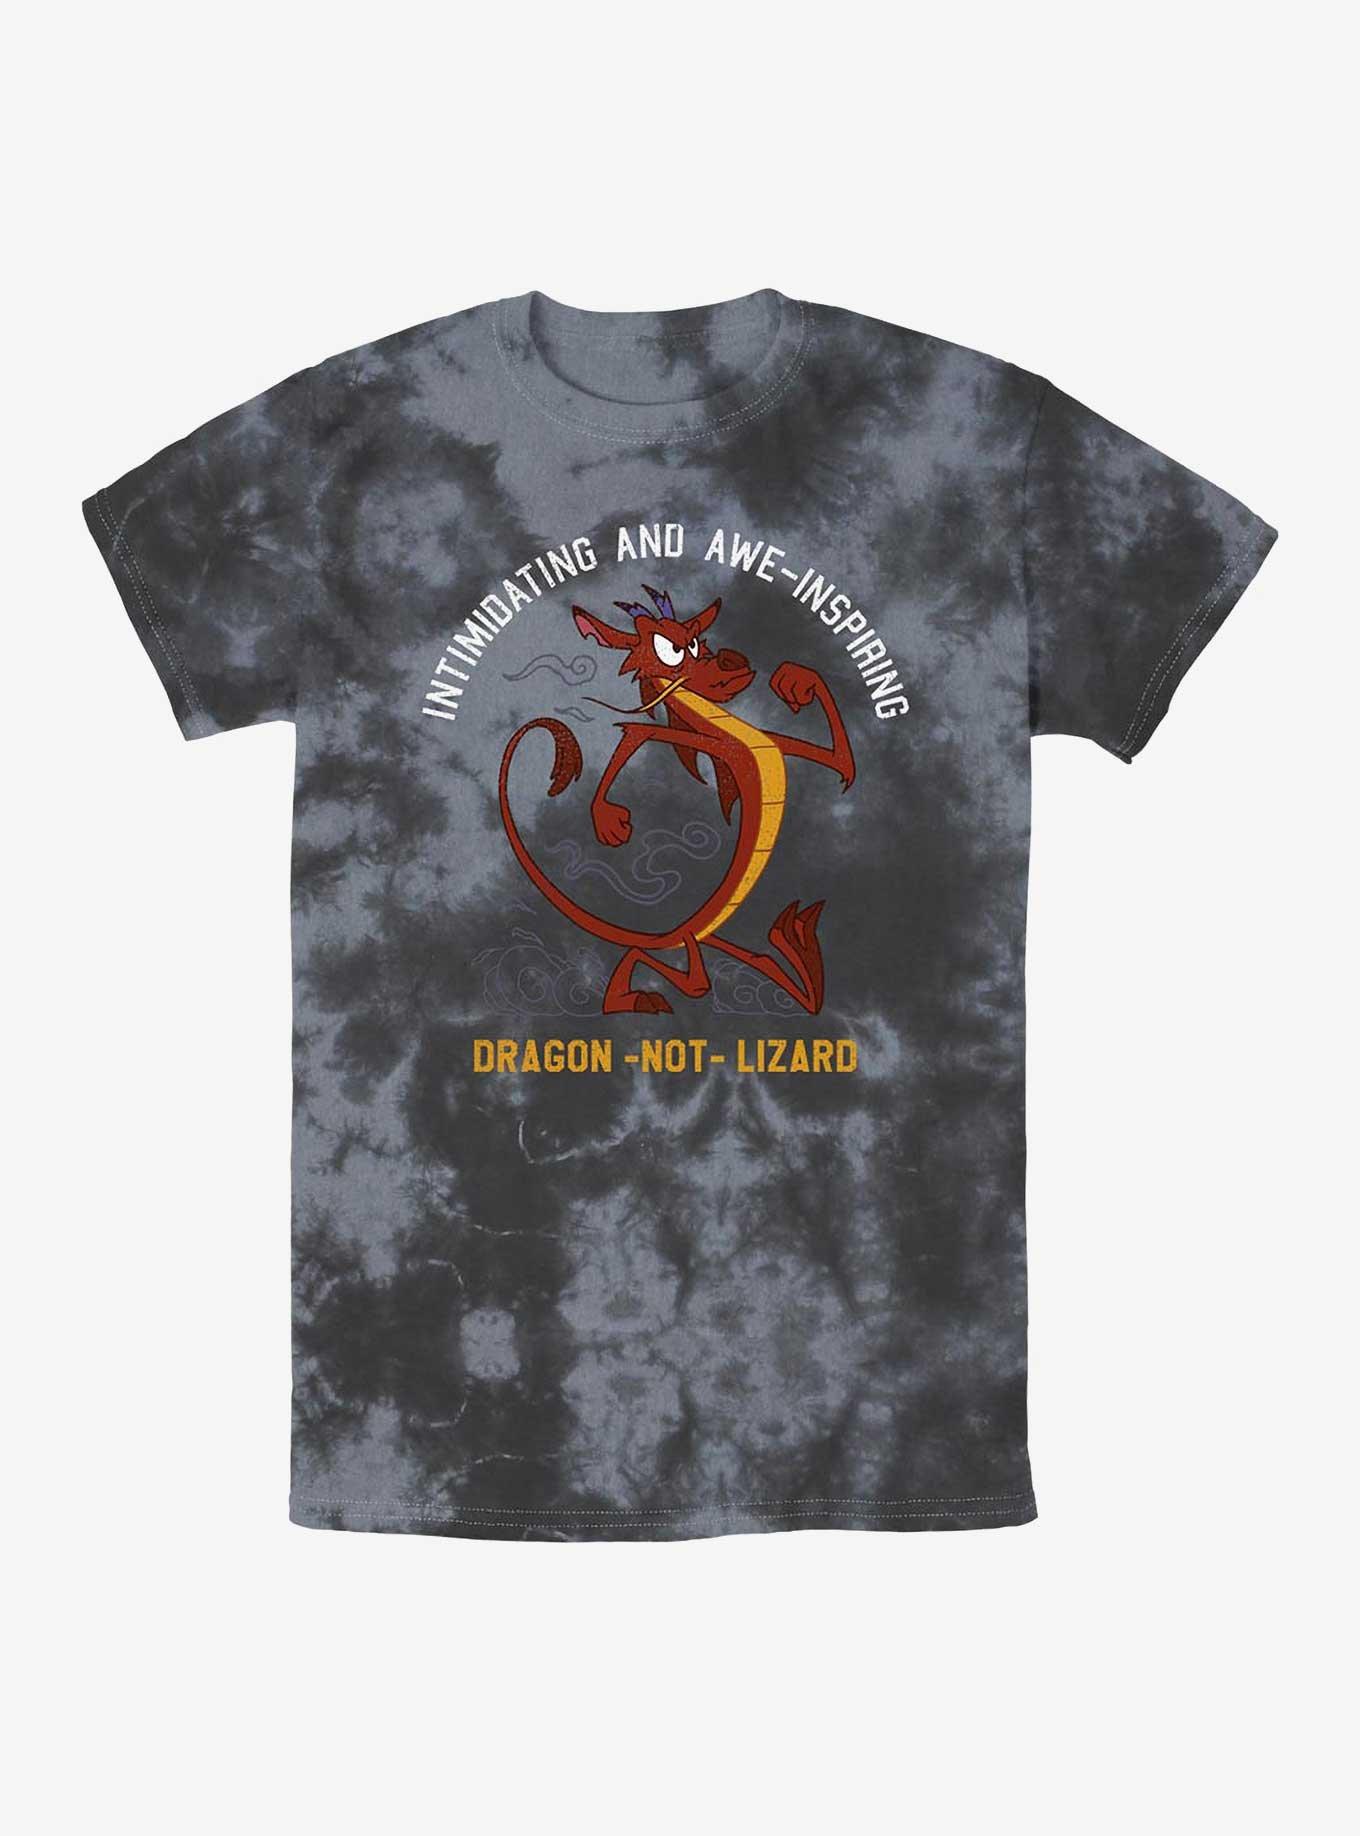 Disney Mulan Mushu Dragon Not Lizard Tie-Dye T-Shirt